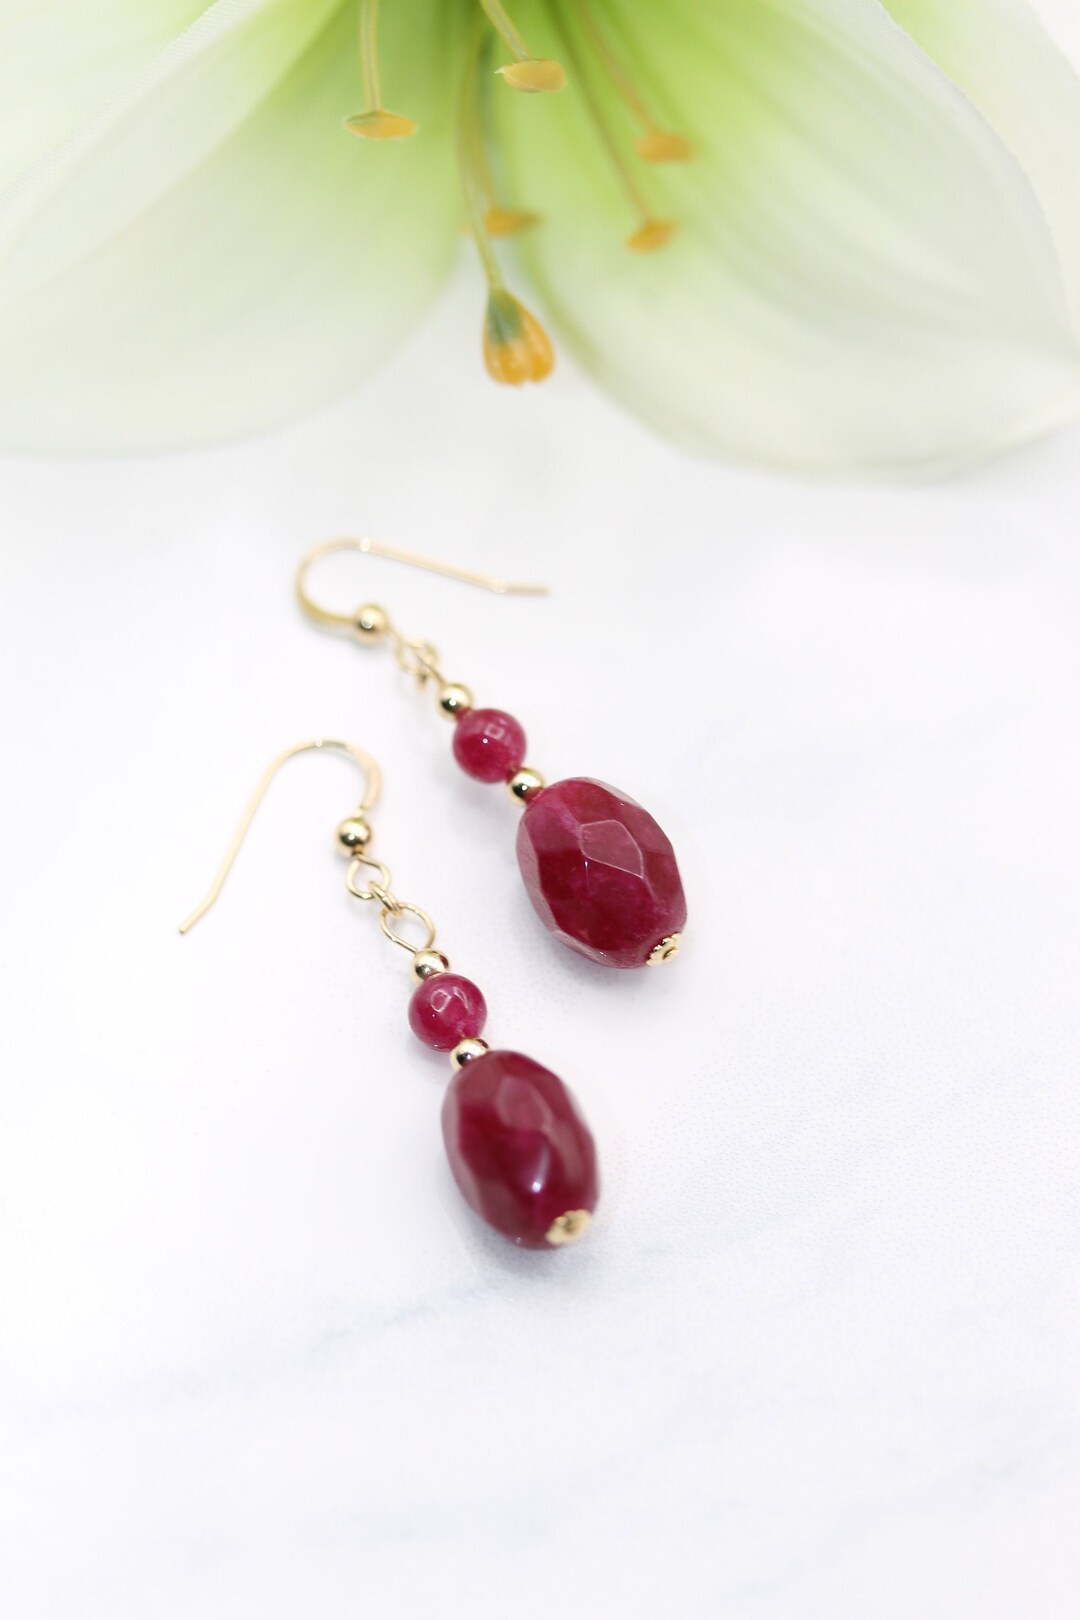 Ruby Jewelry Earth Mined Rubies Ruby Earrings Dangle Ruby - Etsy